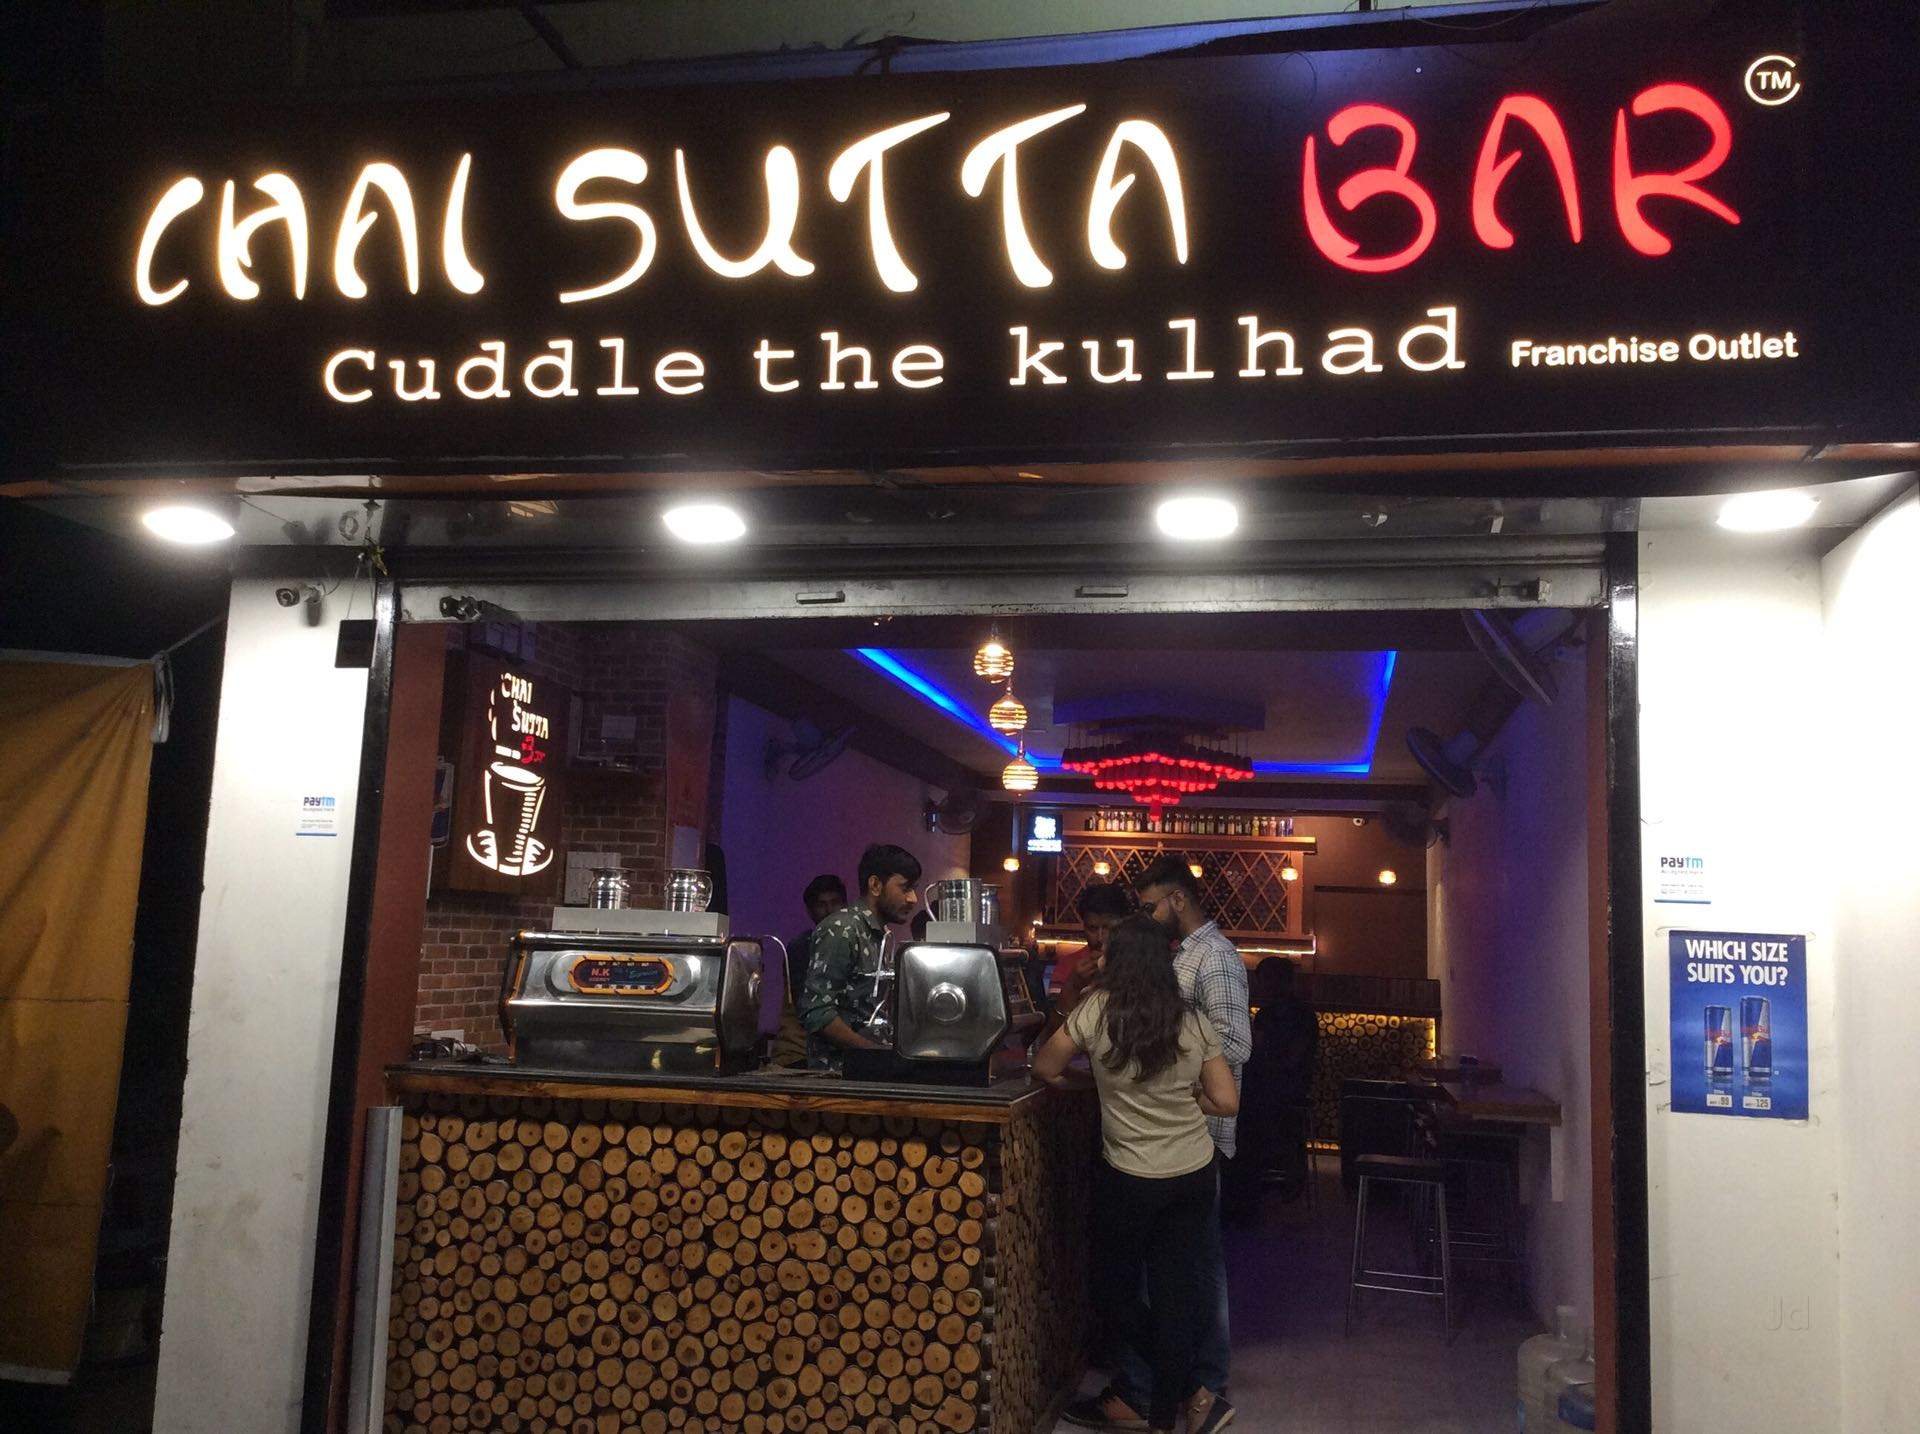 Chai Sutta Bar Franchise